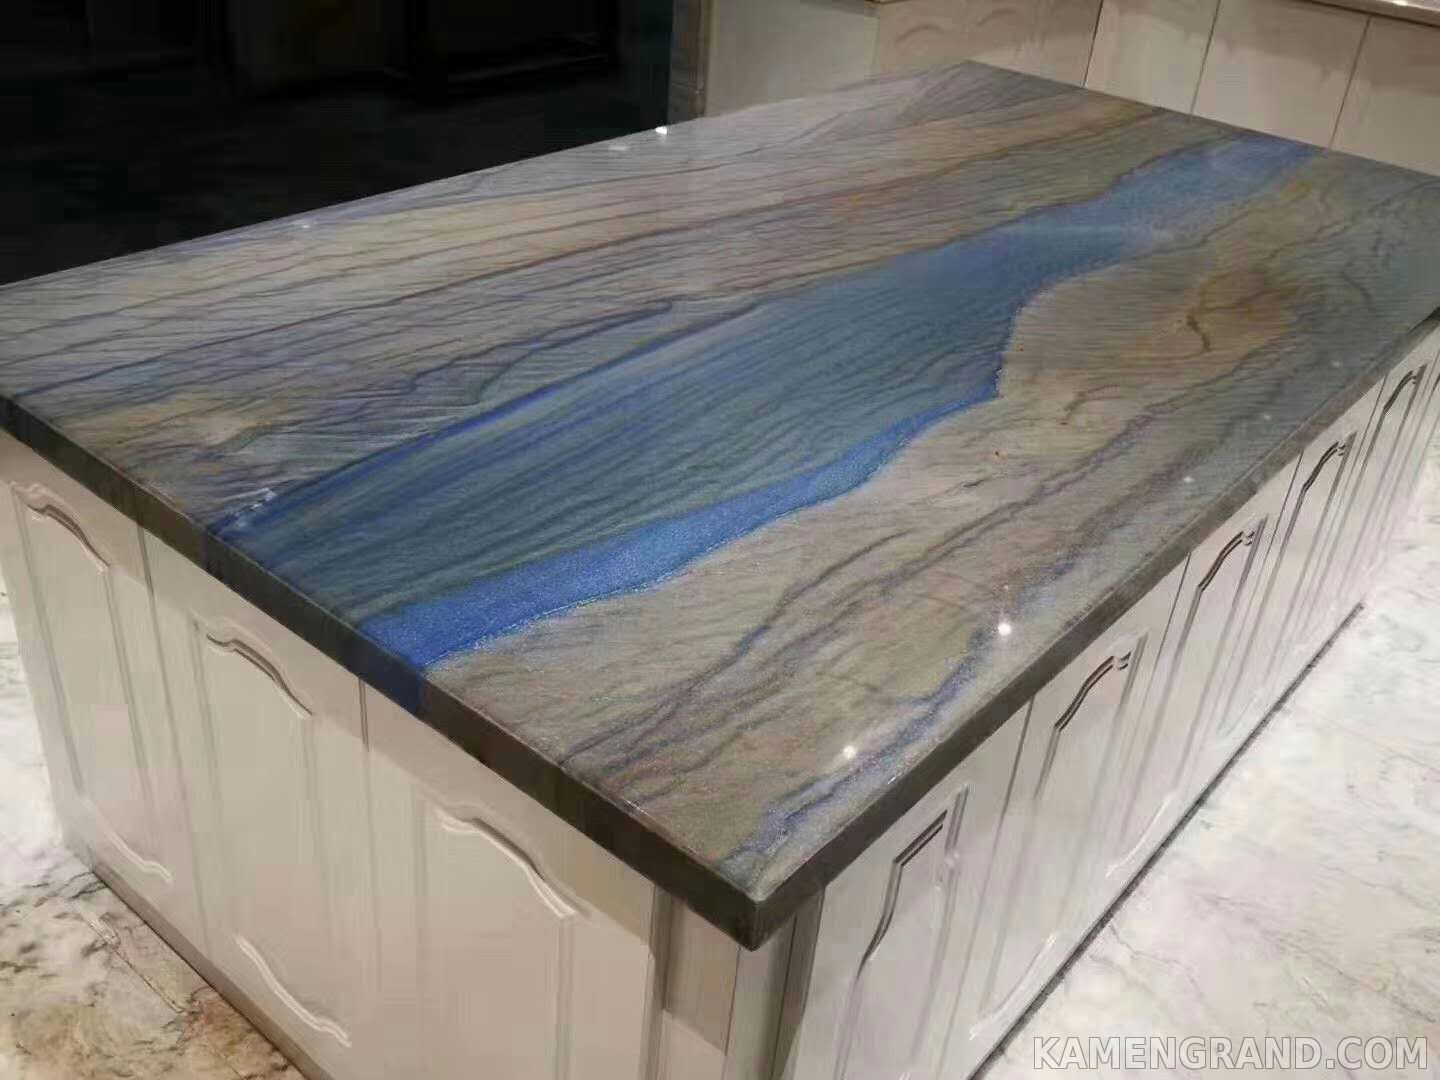 Столешница для кухни из голубого мрамора Blue Sky